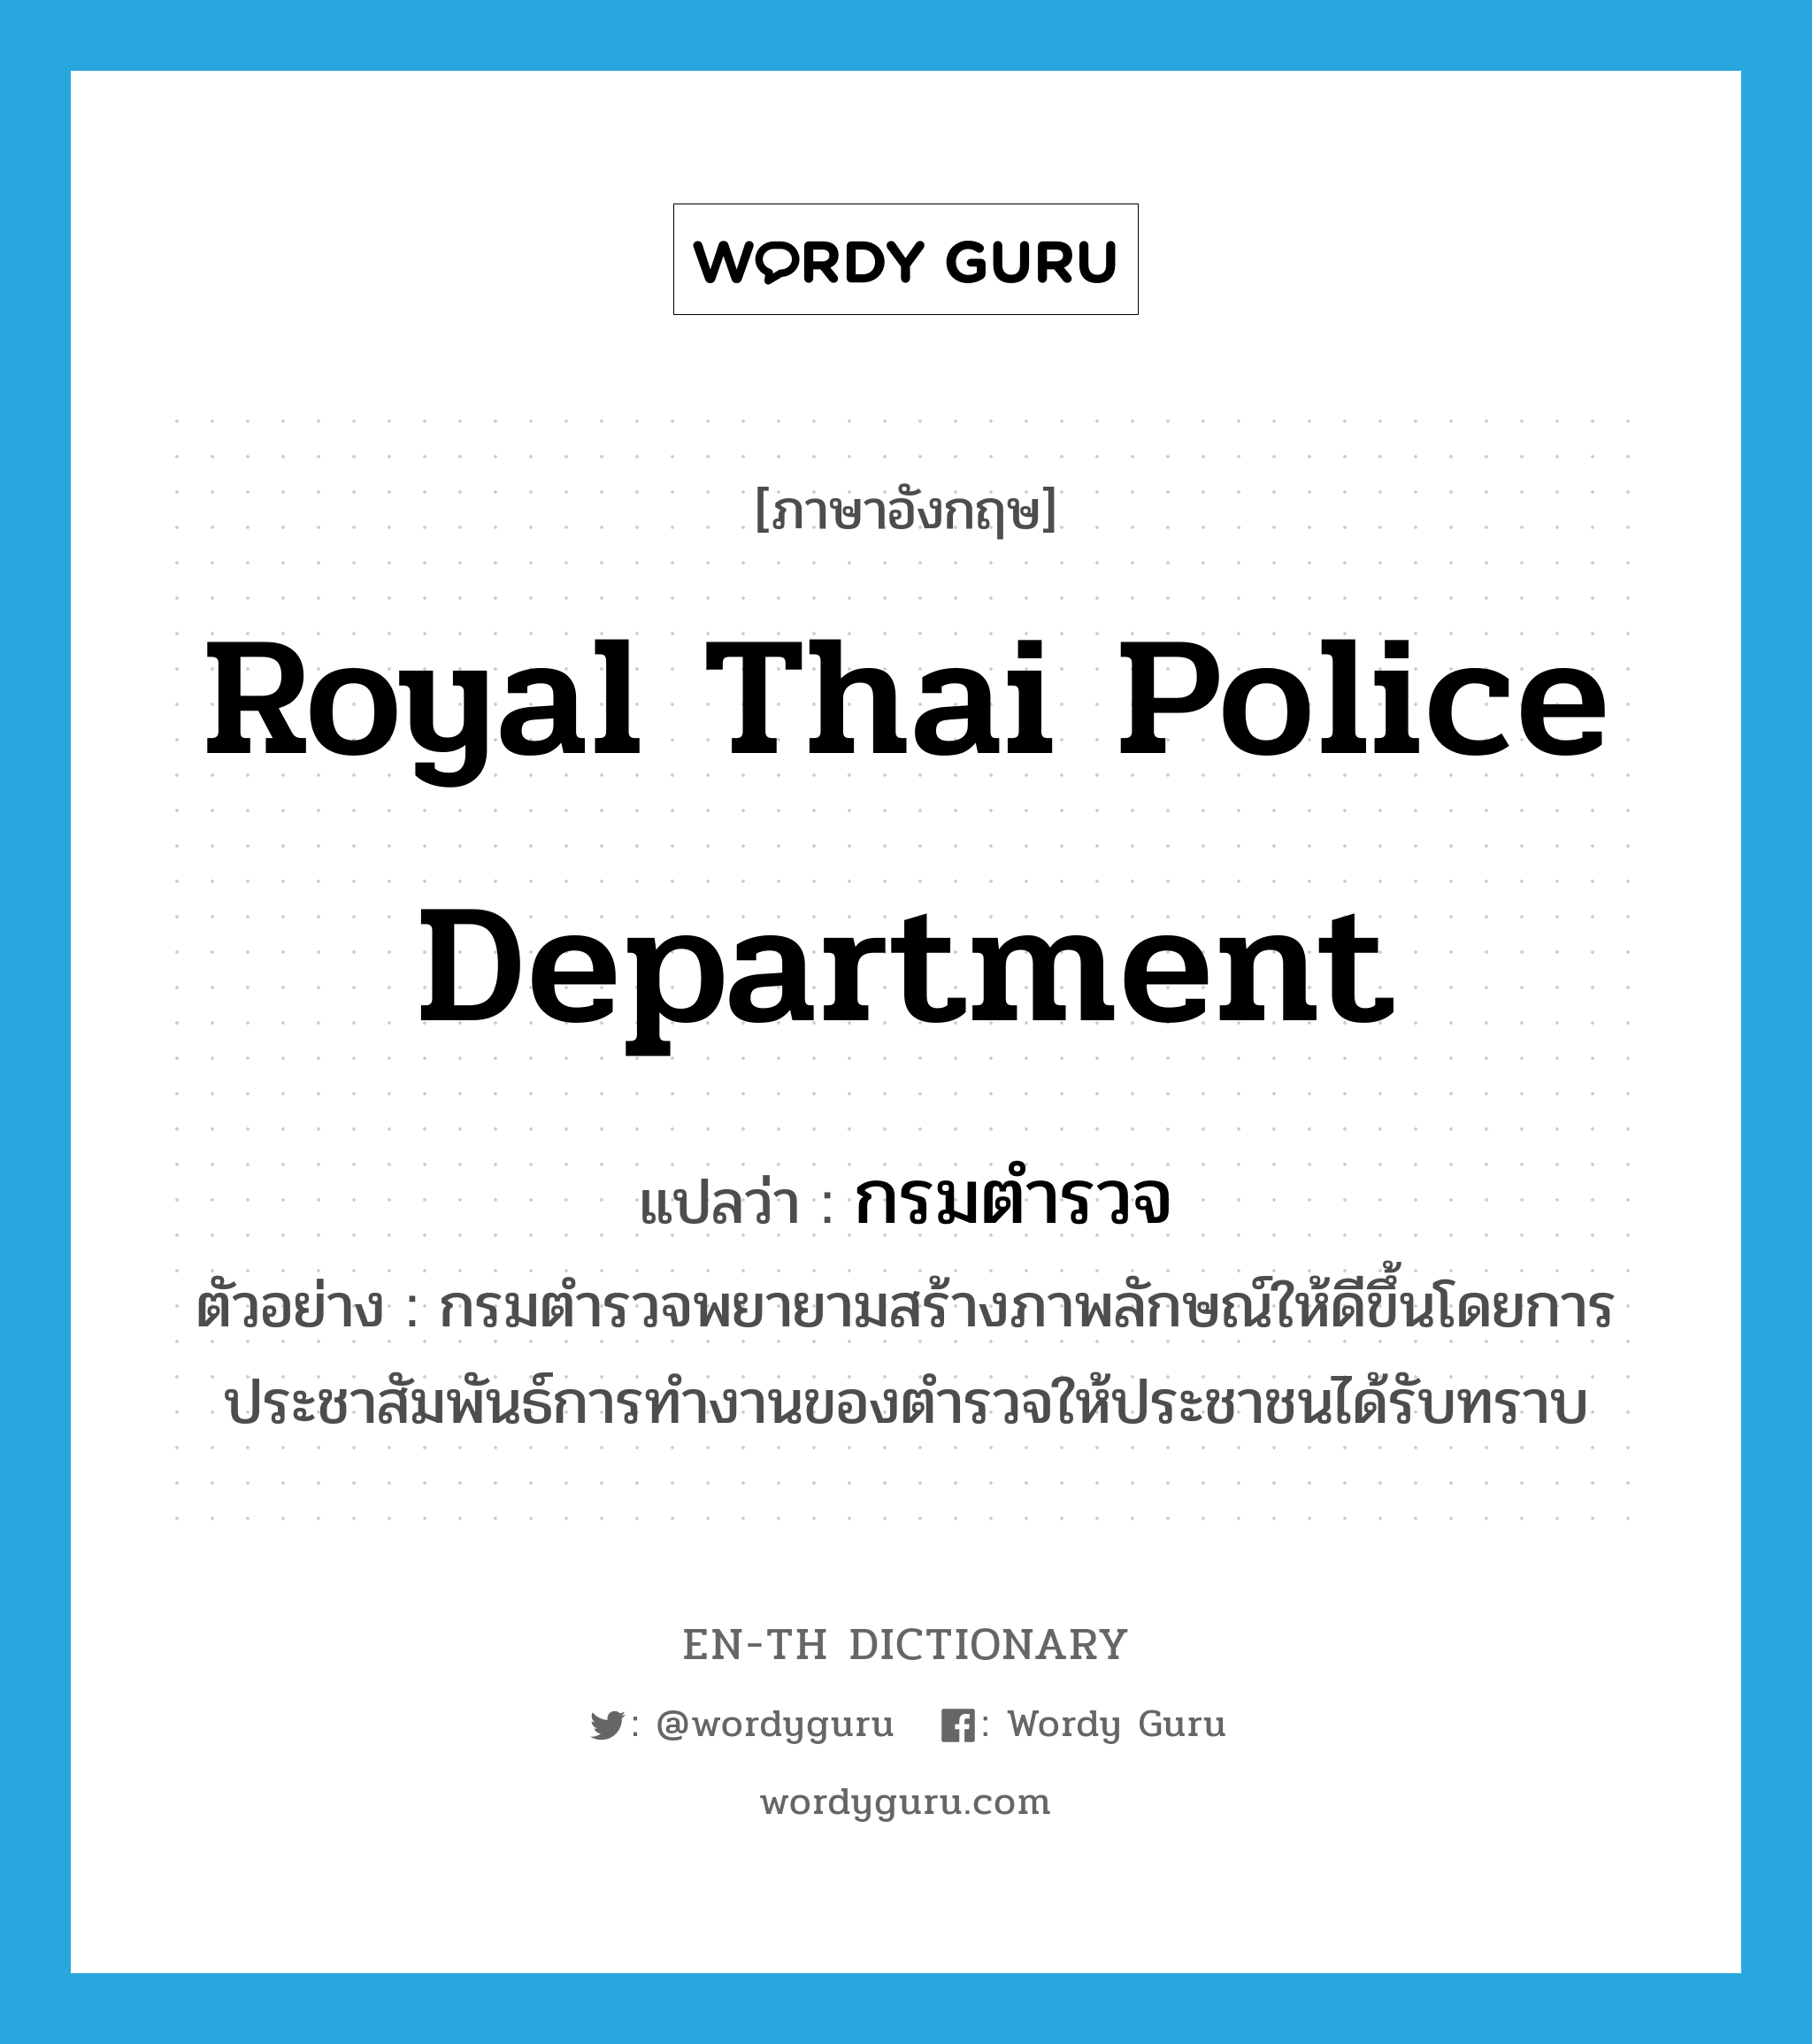 กรมตำรวจ ภาษาอังกฤษ?, คำศัพท์ภาษาอังกฤษ กรมตำรวจ แปลว่า Royal Thai Police Department ประเภท N ตัวอย่าง กรมตำรวจพยายามสร้างภาพลักษณ์ให้ดีขึ้นโดยการประชาสัมพันธ์การทำงานของตำรวจให้ประชาชนได้รับทราบ หมวด N